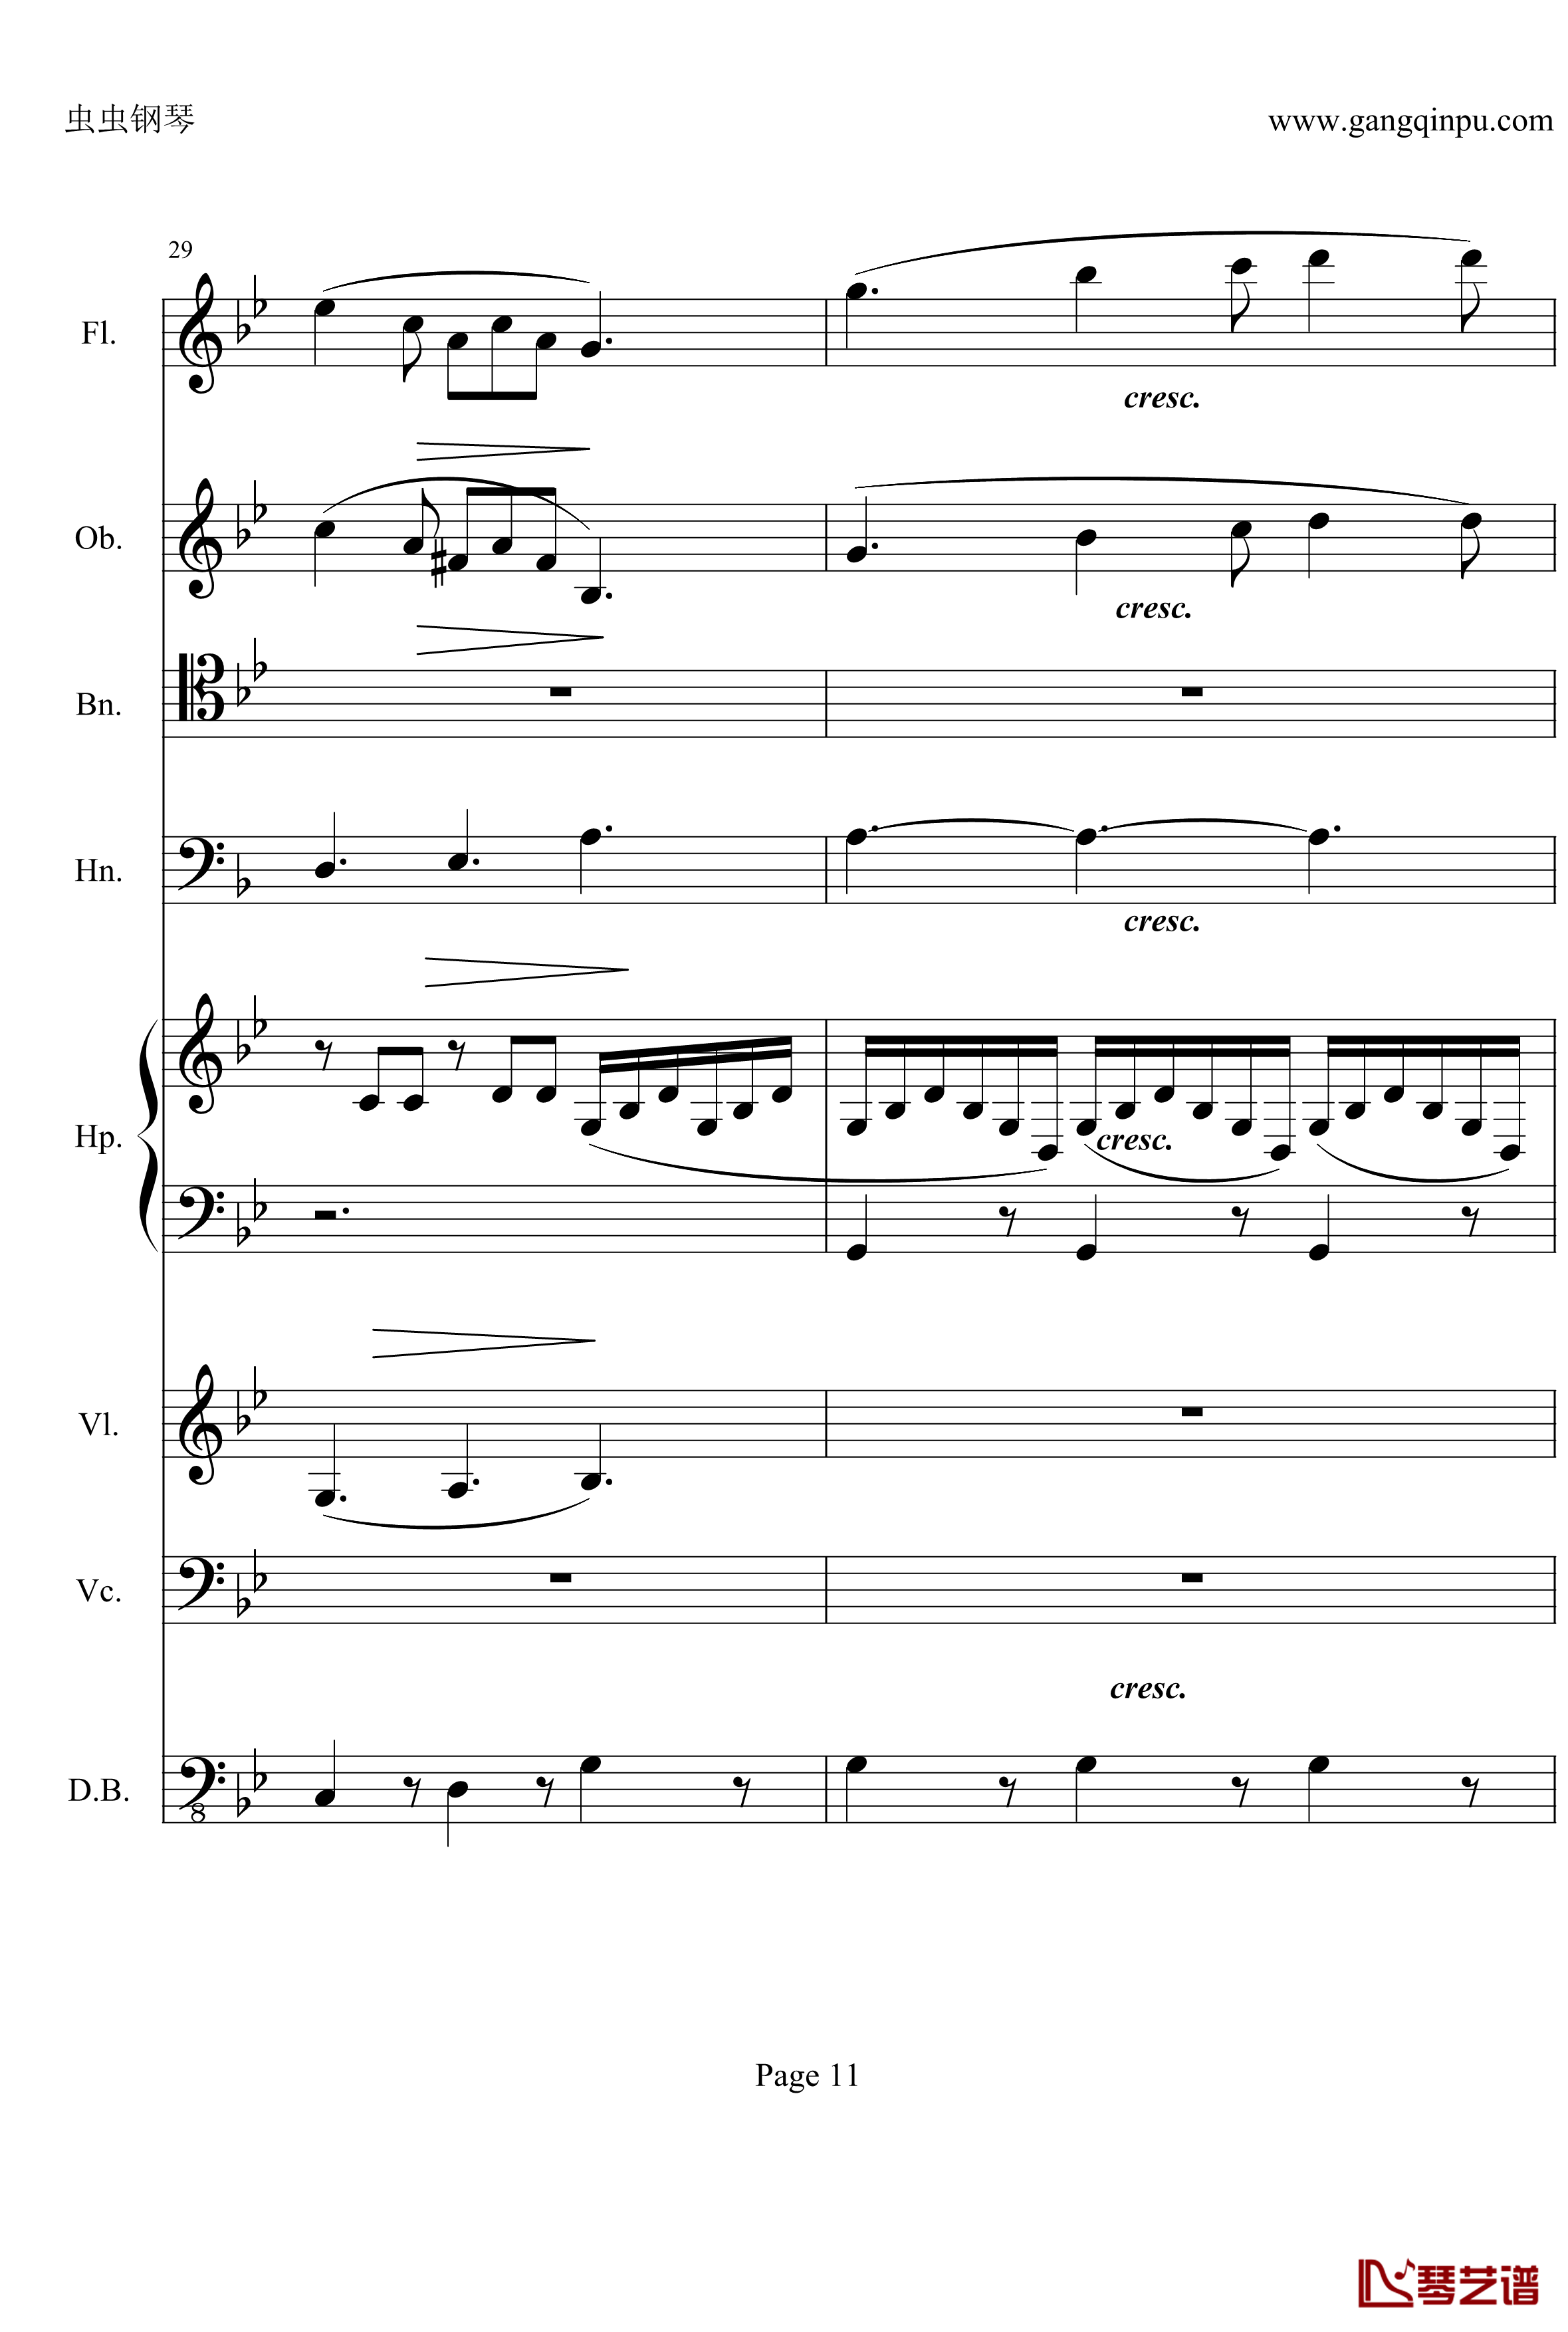 奏鸣曲之交响钢琴谱-第25首-Ⅱ-贝多芬-beethoven11